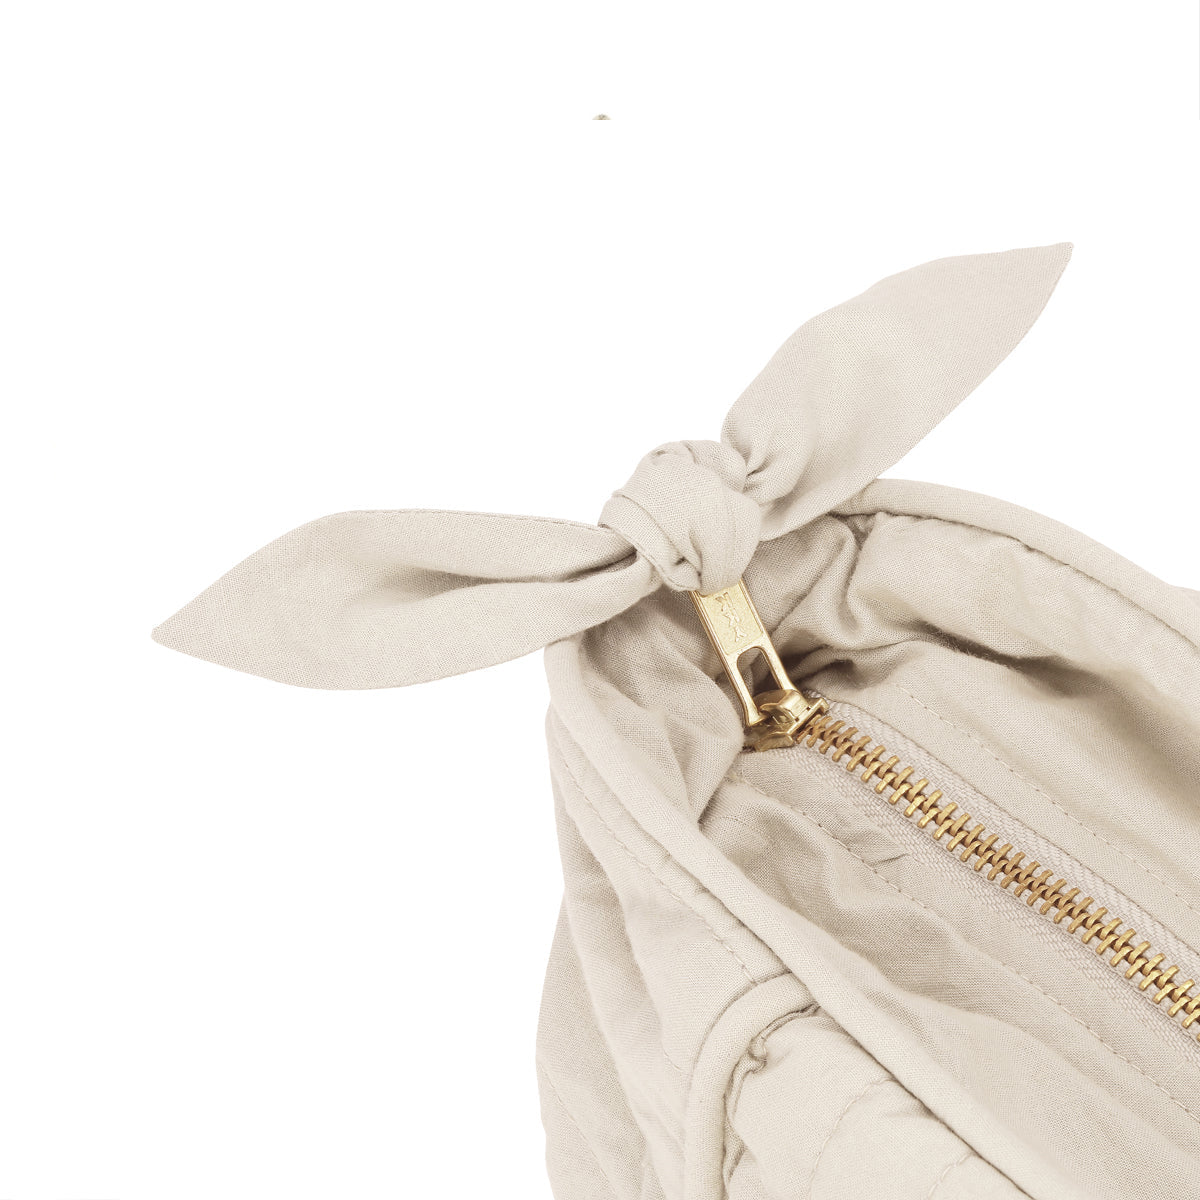 De perfecte tas voor onderweg: de Quilted tote bag van Vanilla Copenhagen in de kleur Oyster Grey. Mooie details, lange handvaten, diverse vakken en een afsluitbare rits. Praktisch én luxe is deze mombag. VanZus